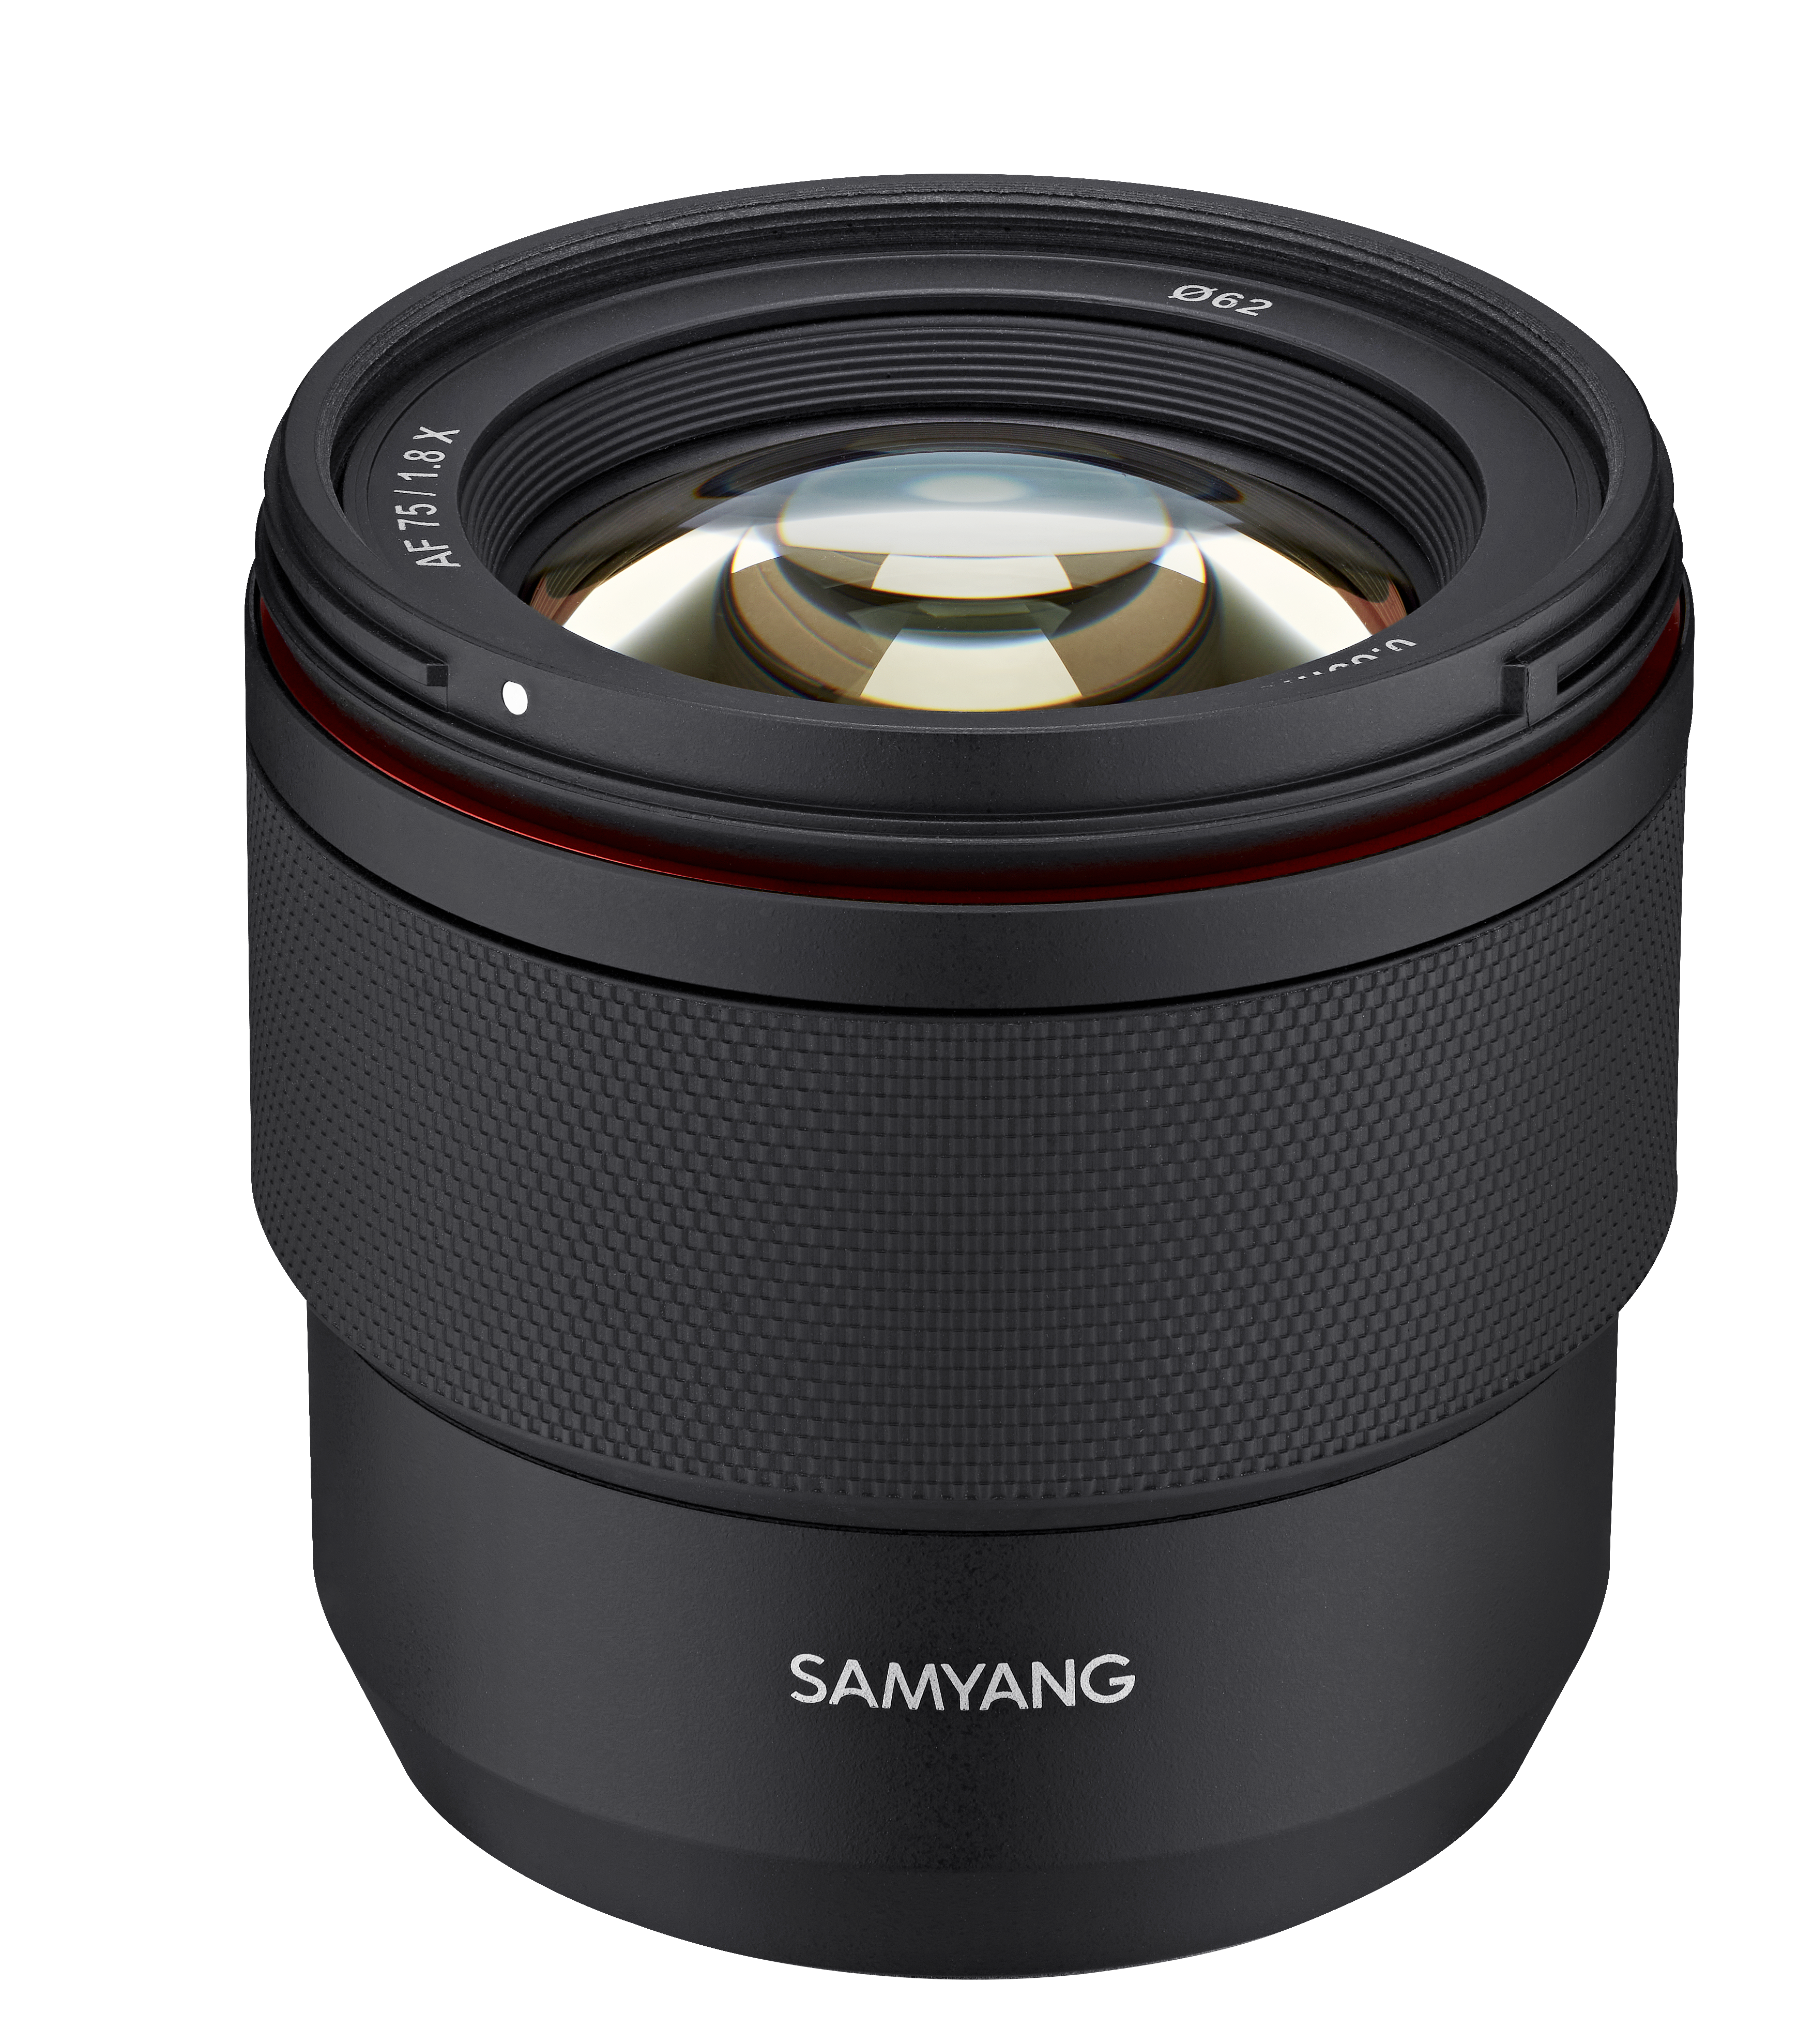 Samyang AF 75mm F1.8 lens for Fuji X